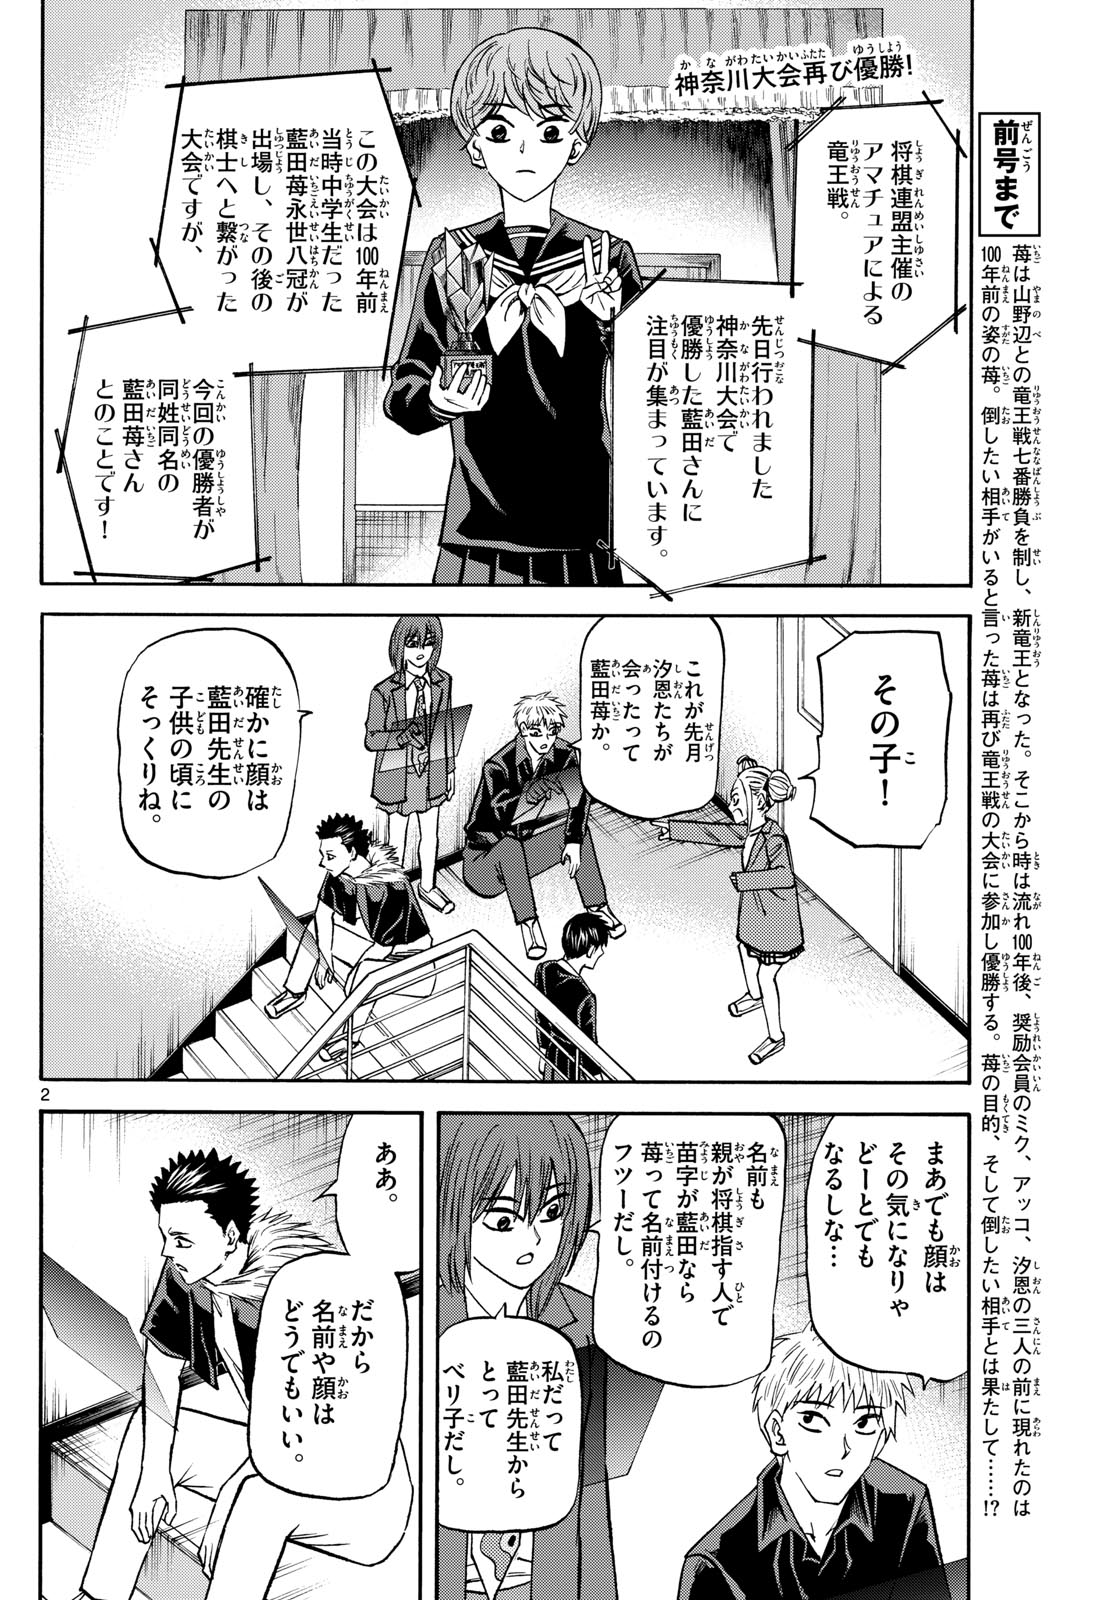 Tatsu to Ichigo - Chapter 186 - Page 2